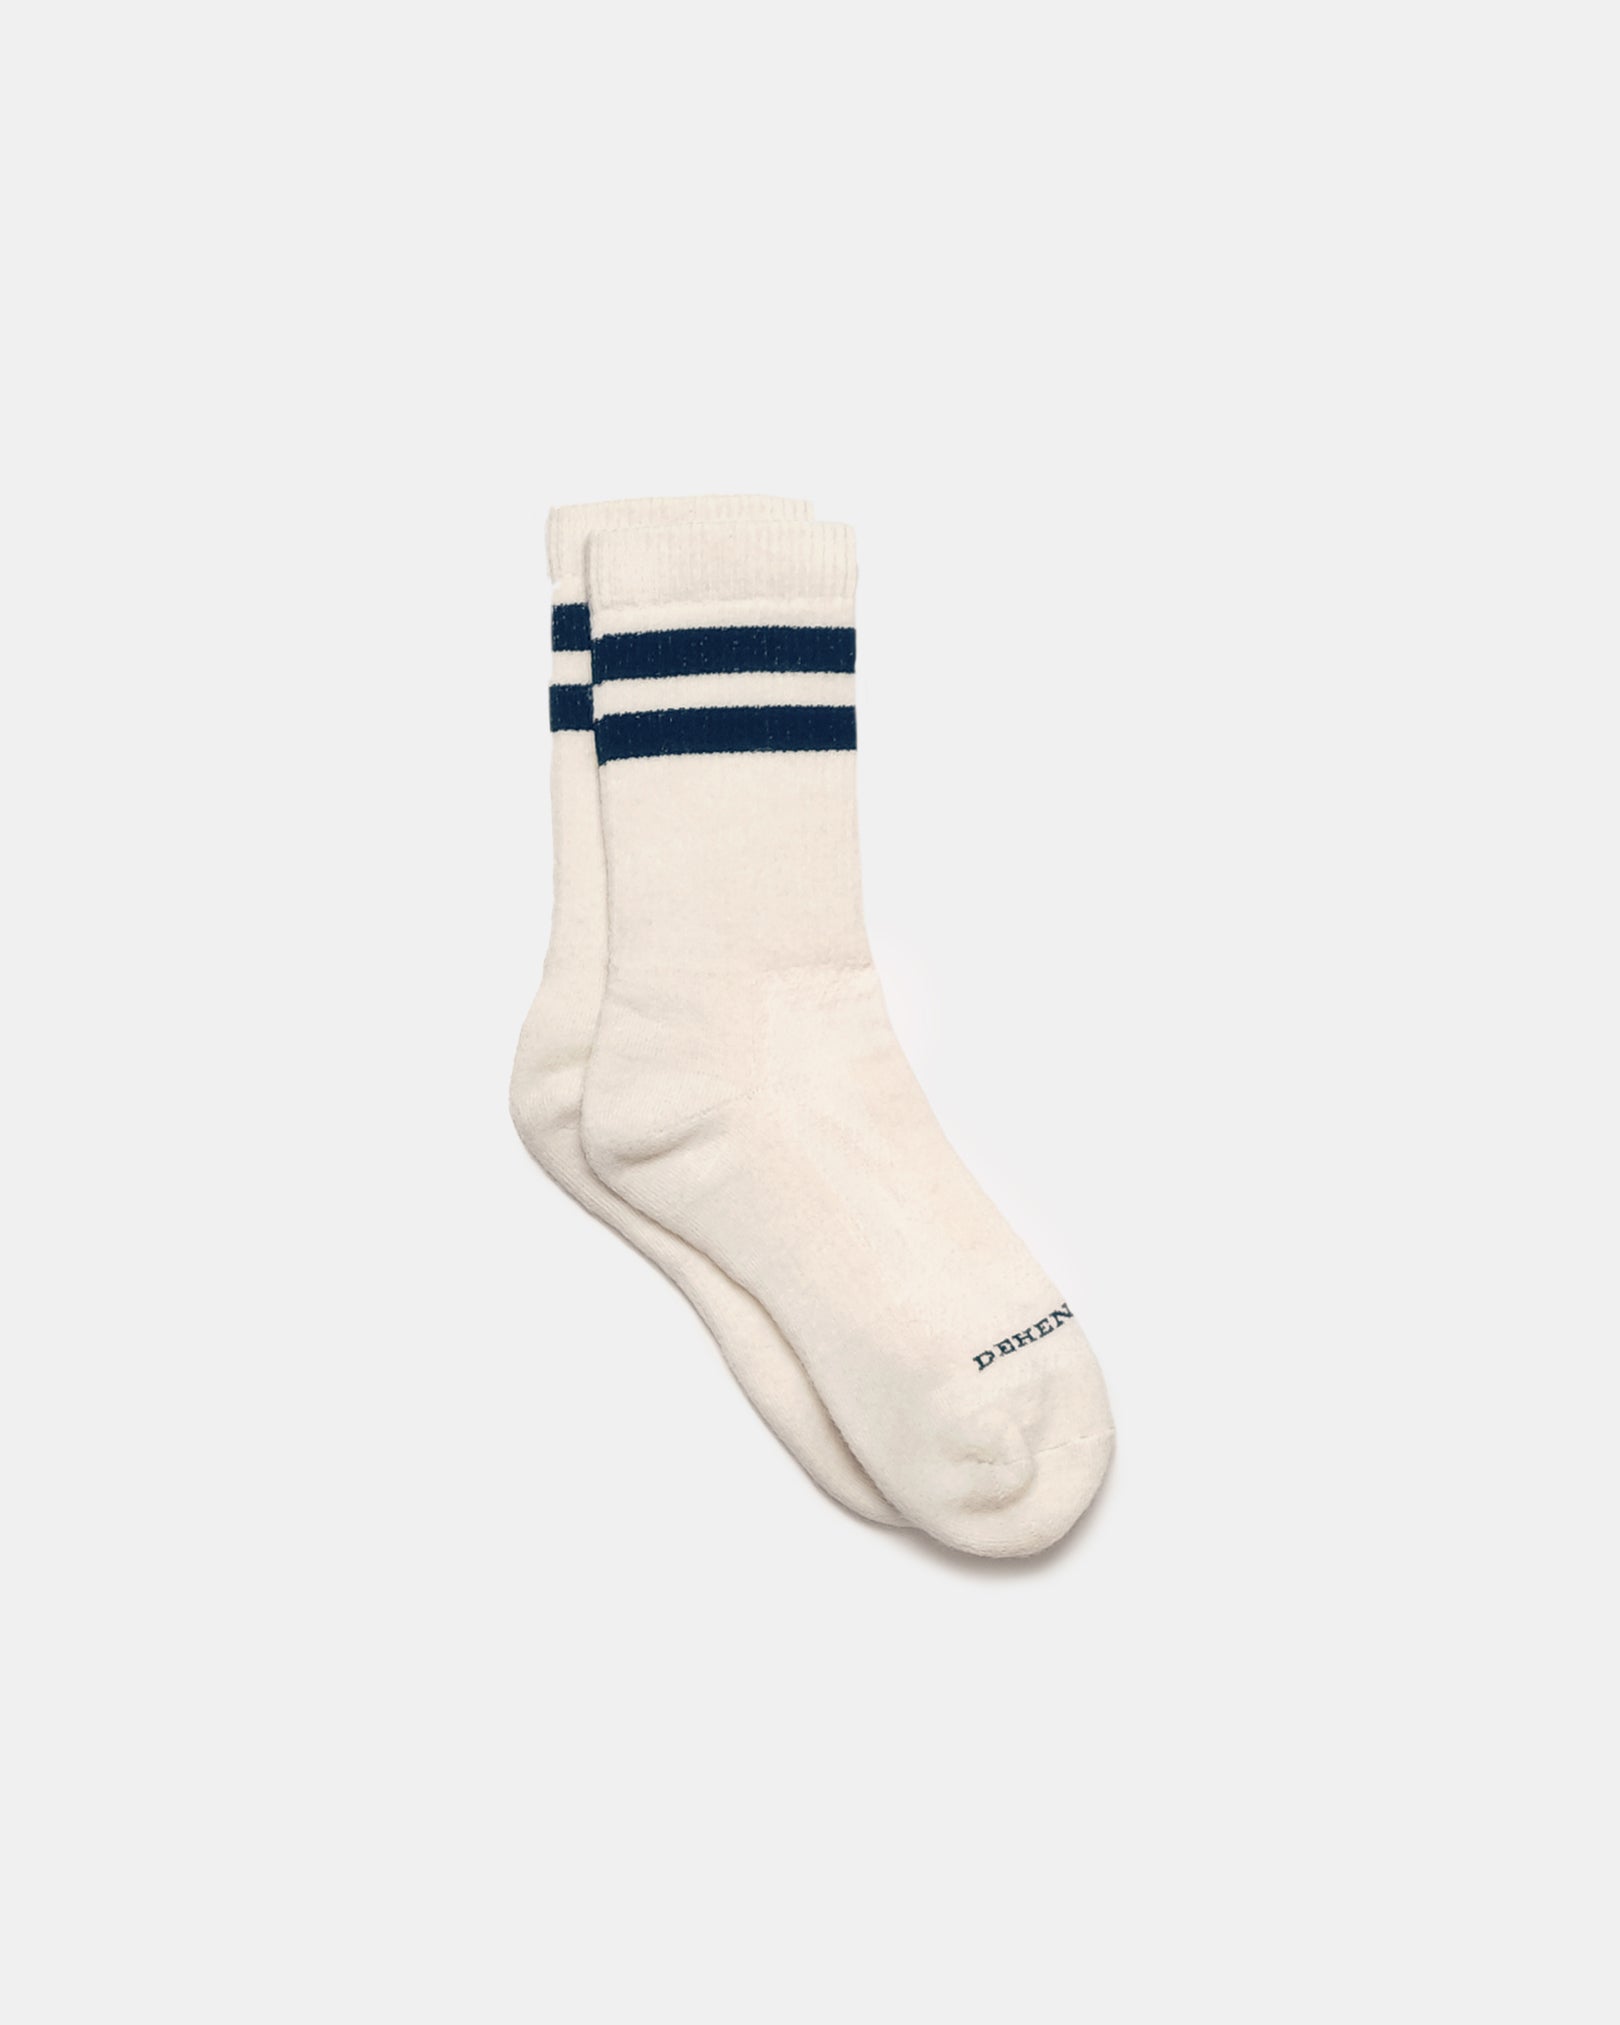 Heavy Duty Wool Socks - Off White Navy – Dehen 1920